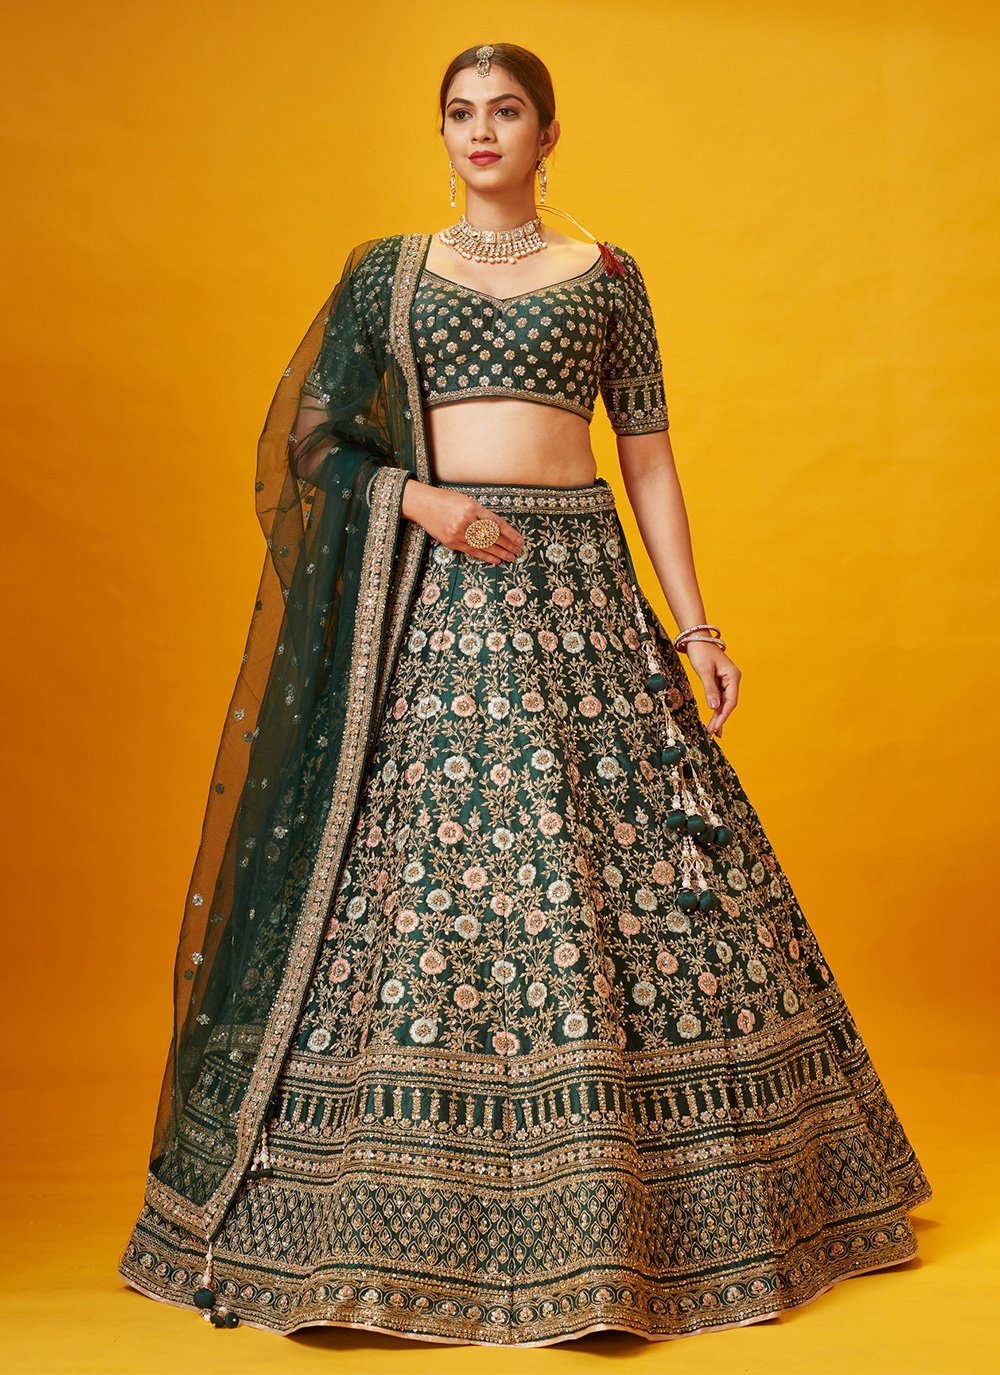 Bottle Green Lehenga Blouse - Pakistani Wedding Dress | Bridal dresses  pakistan, Pakistani party wear dresses, Pakistani bridal